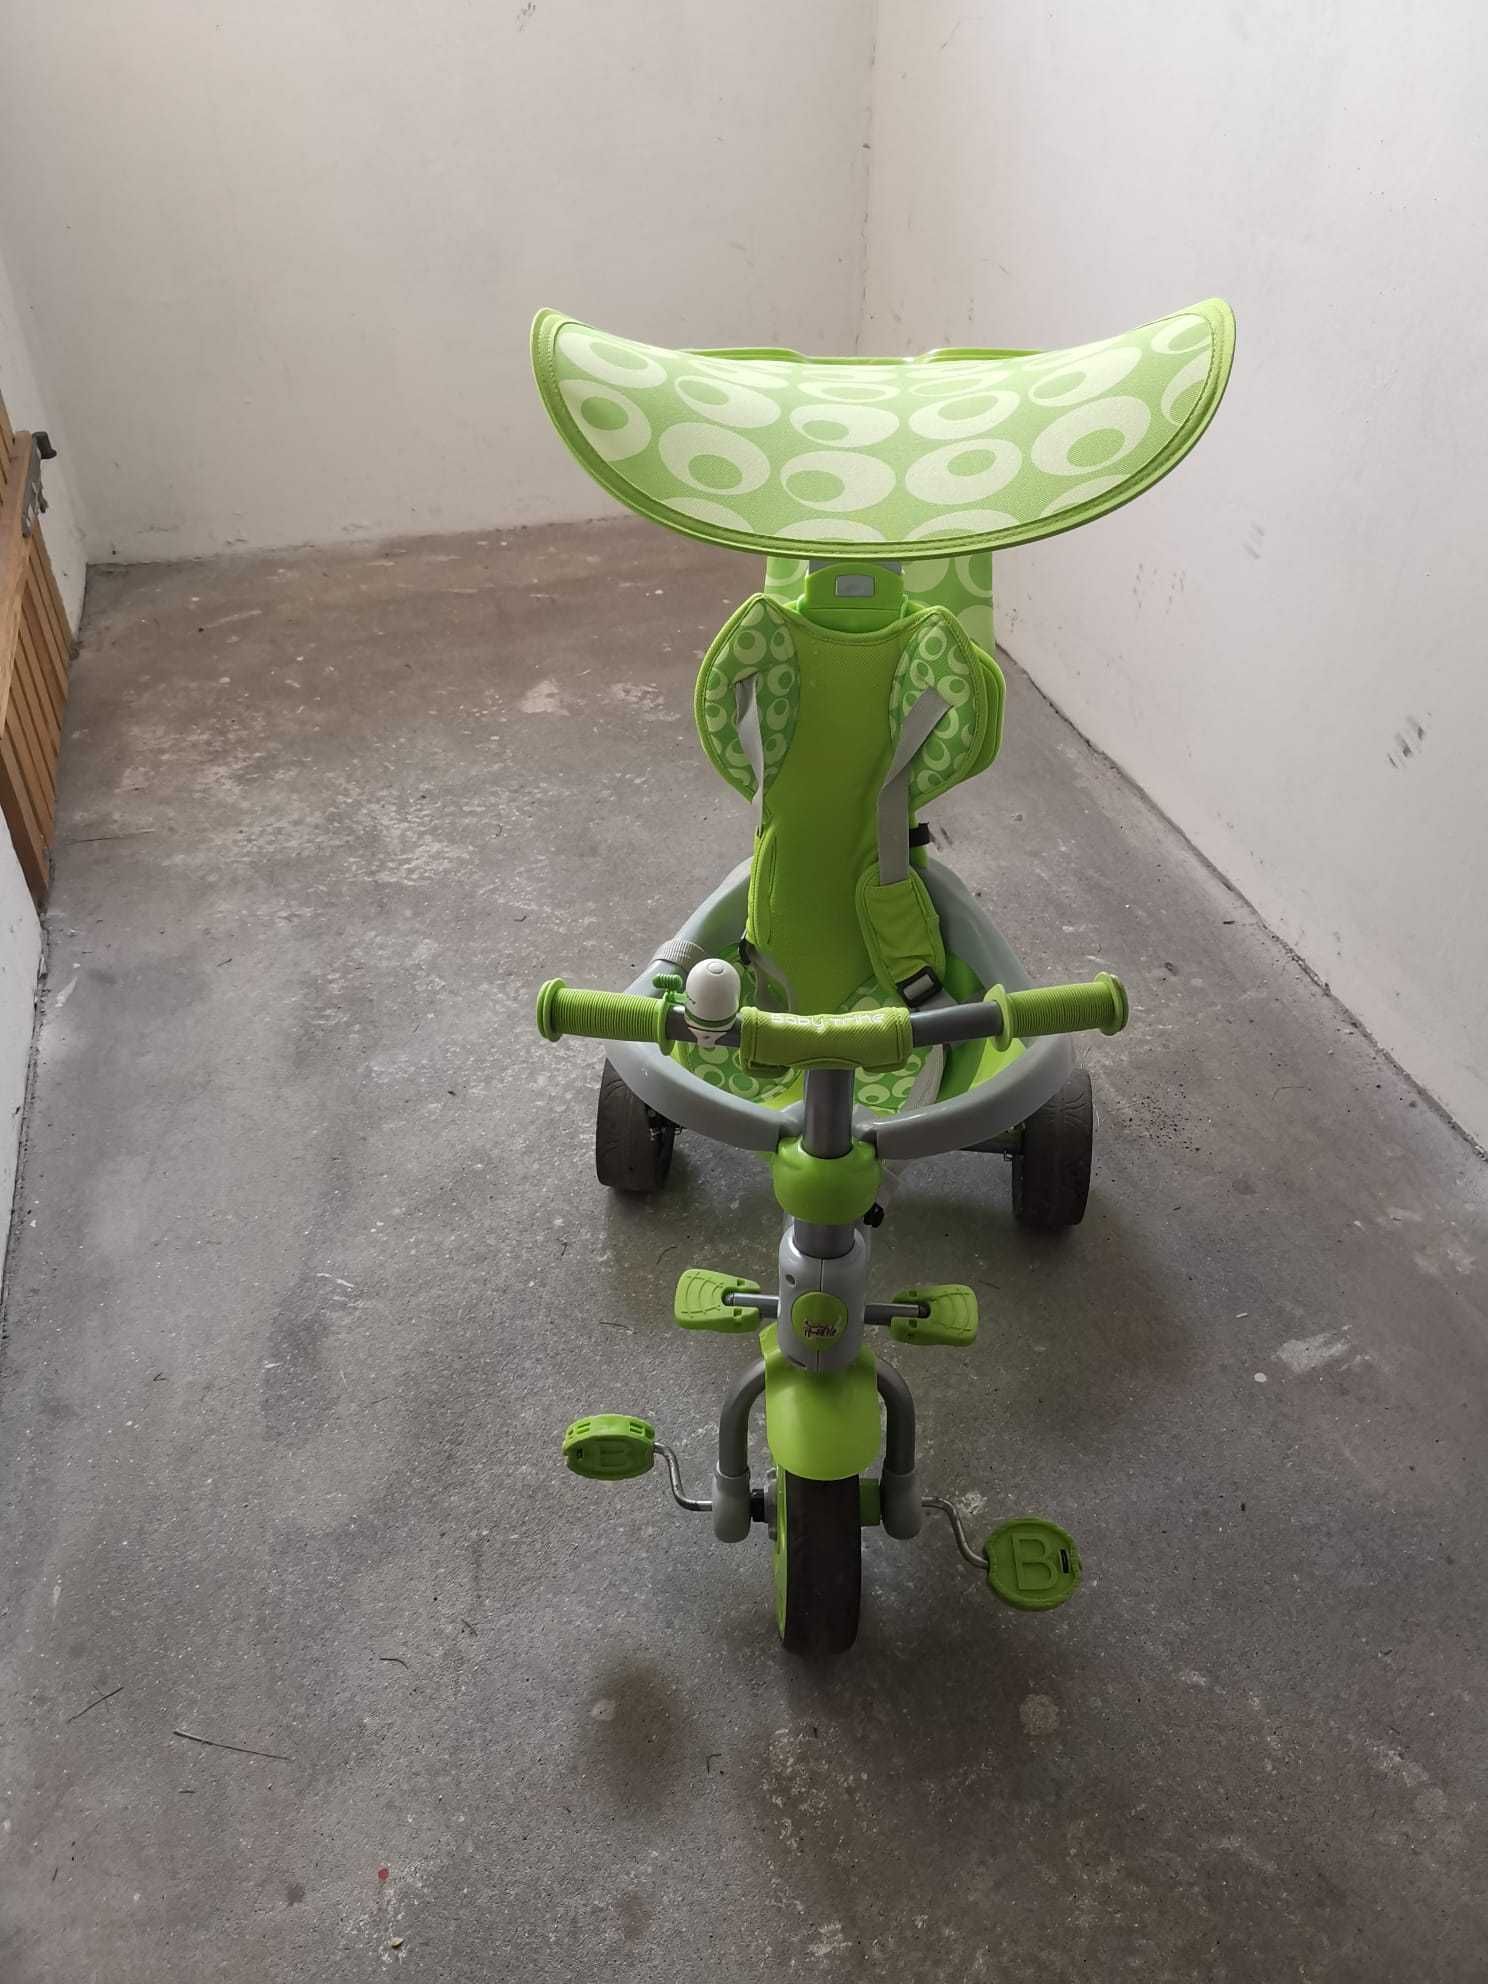 Rowerek Baby Trike